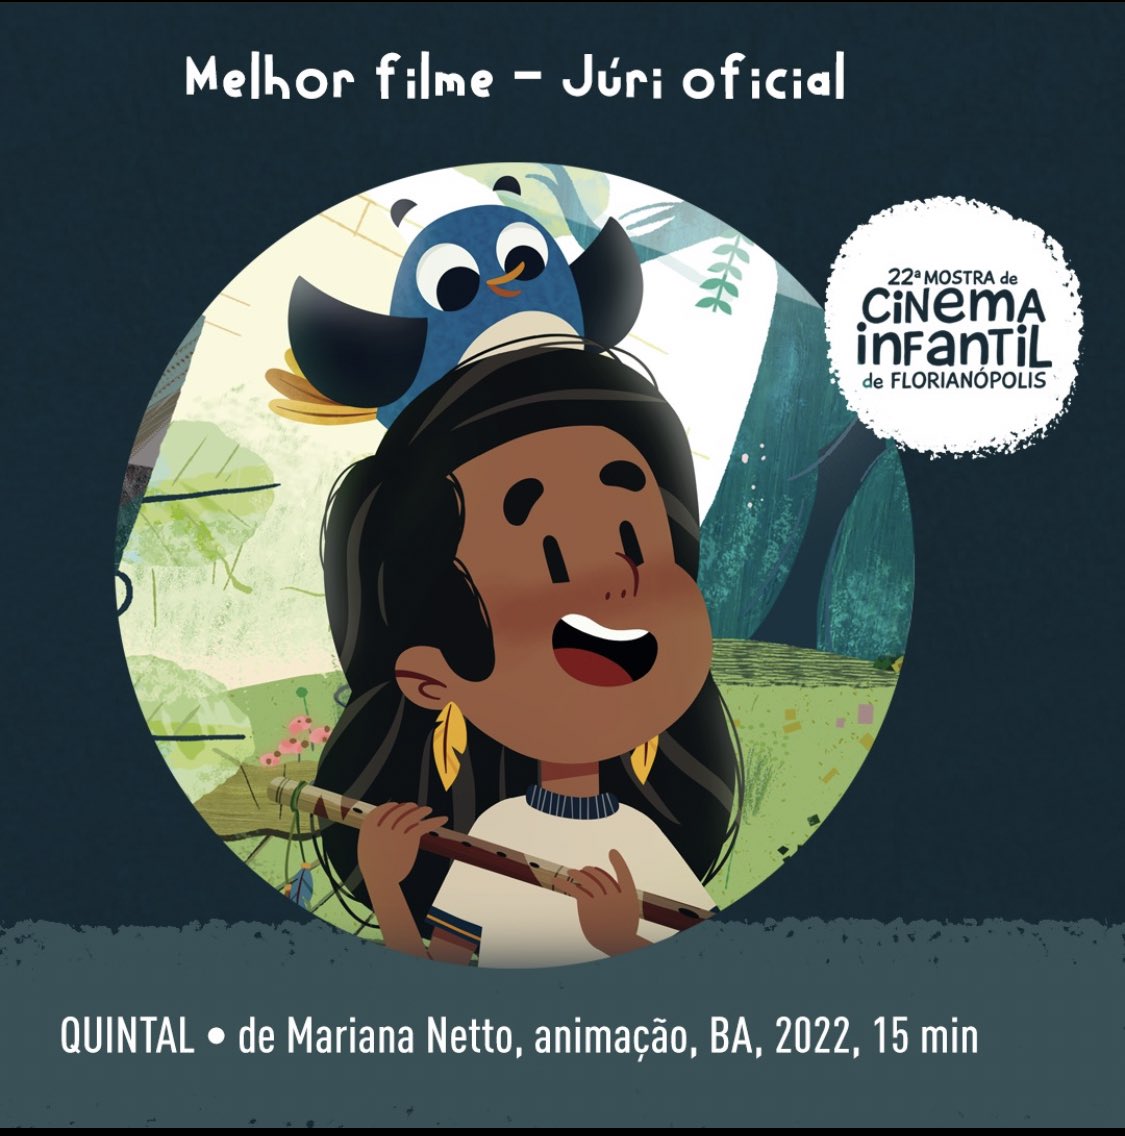 O Quintal foi escolhido como Mehor Filme pelo Júri Oficial na Mostra de Cinema Infantil de Florianópolis!! @cineinfantil 💛✨ Não poderíamos estar mais felizes!! Obrigada! 🥹🥹